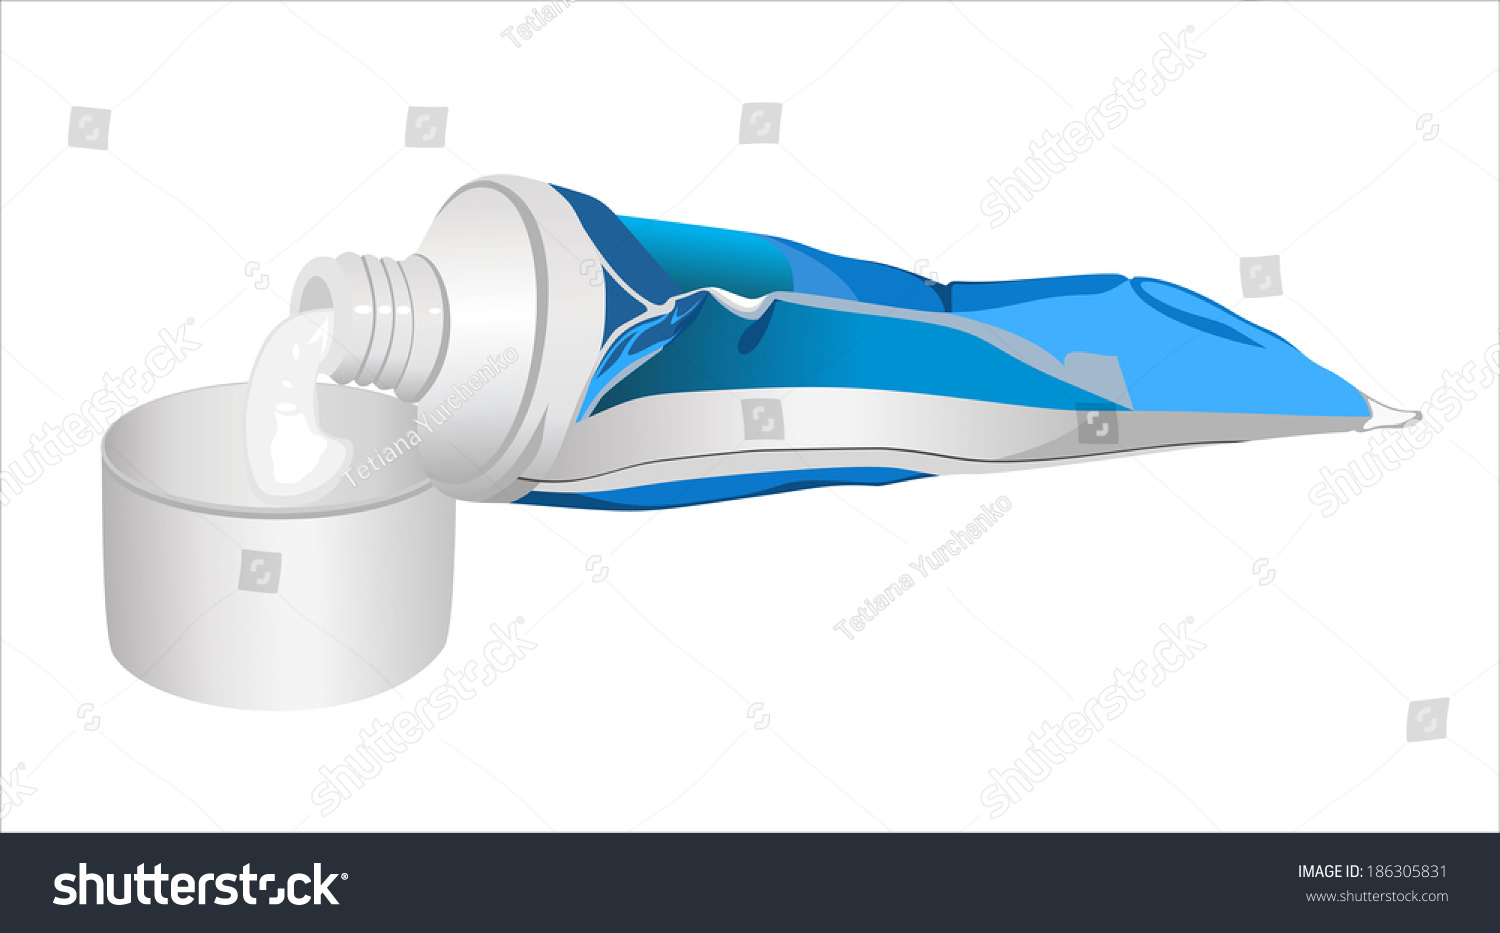 Тюбик зубной пасты